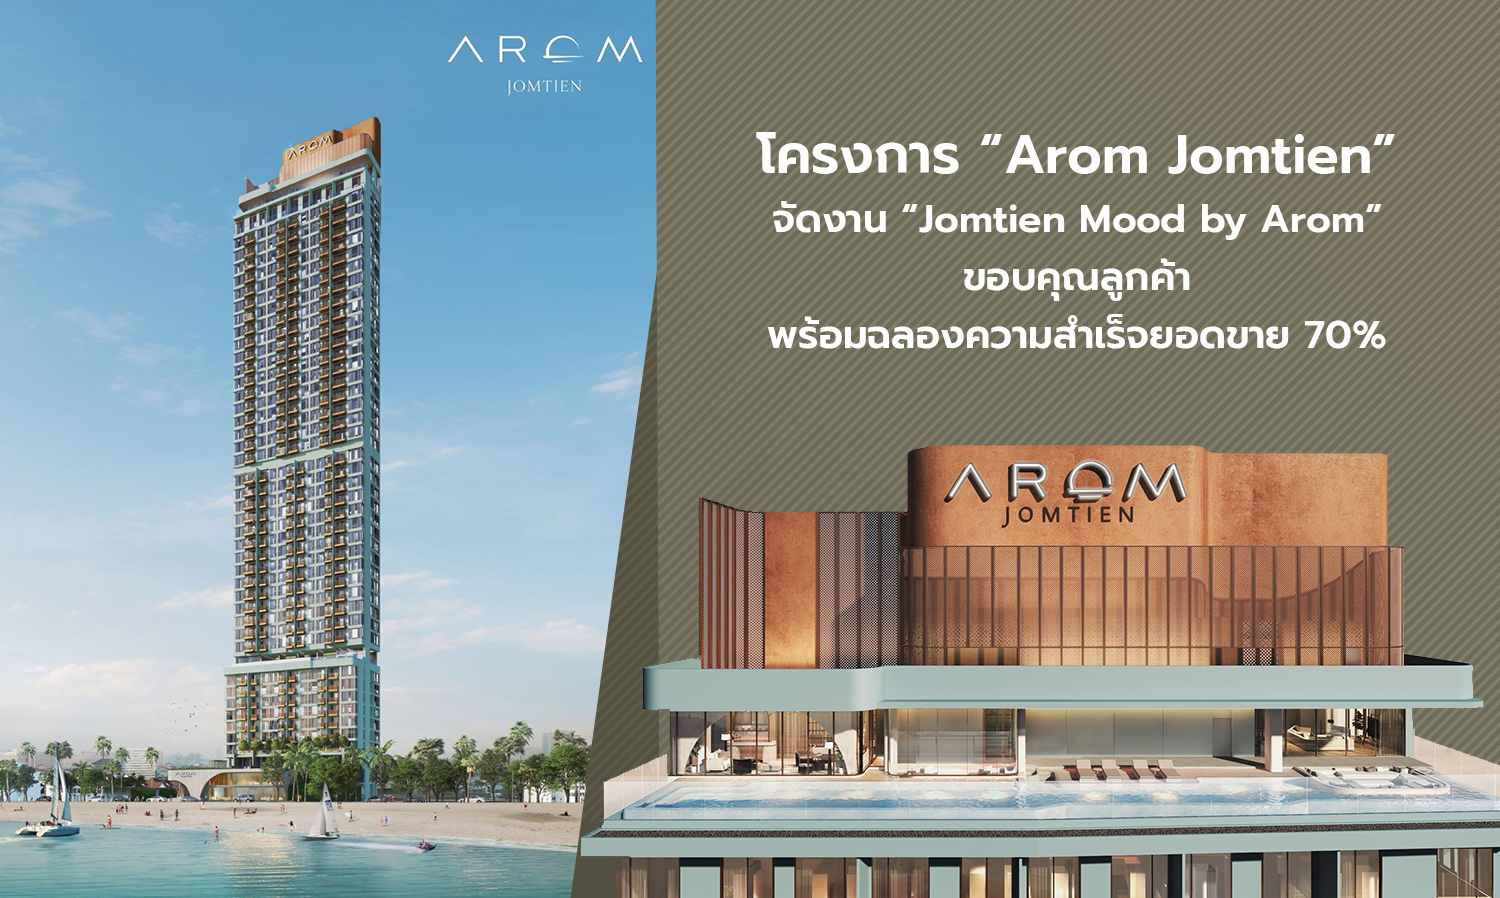 โครงการ “Arom Jomtien” จัดงาน “Jomtien Mood by Arom” ขอบคุณลูกค้า พร้อมฉลองความสำเร็จยอดขาย 70%